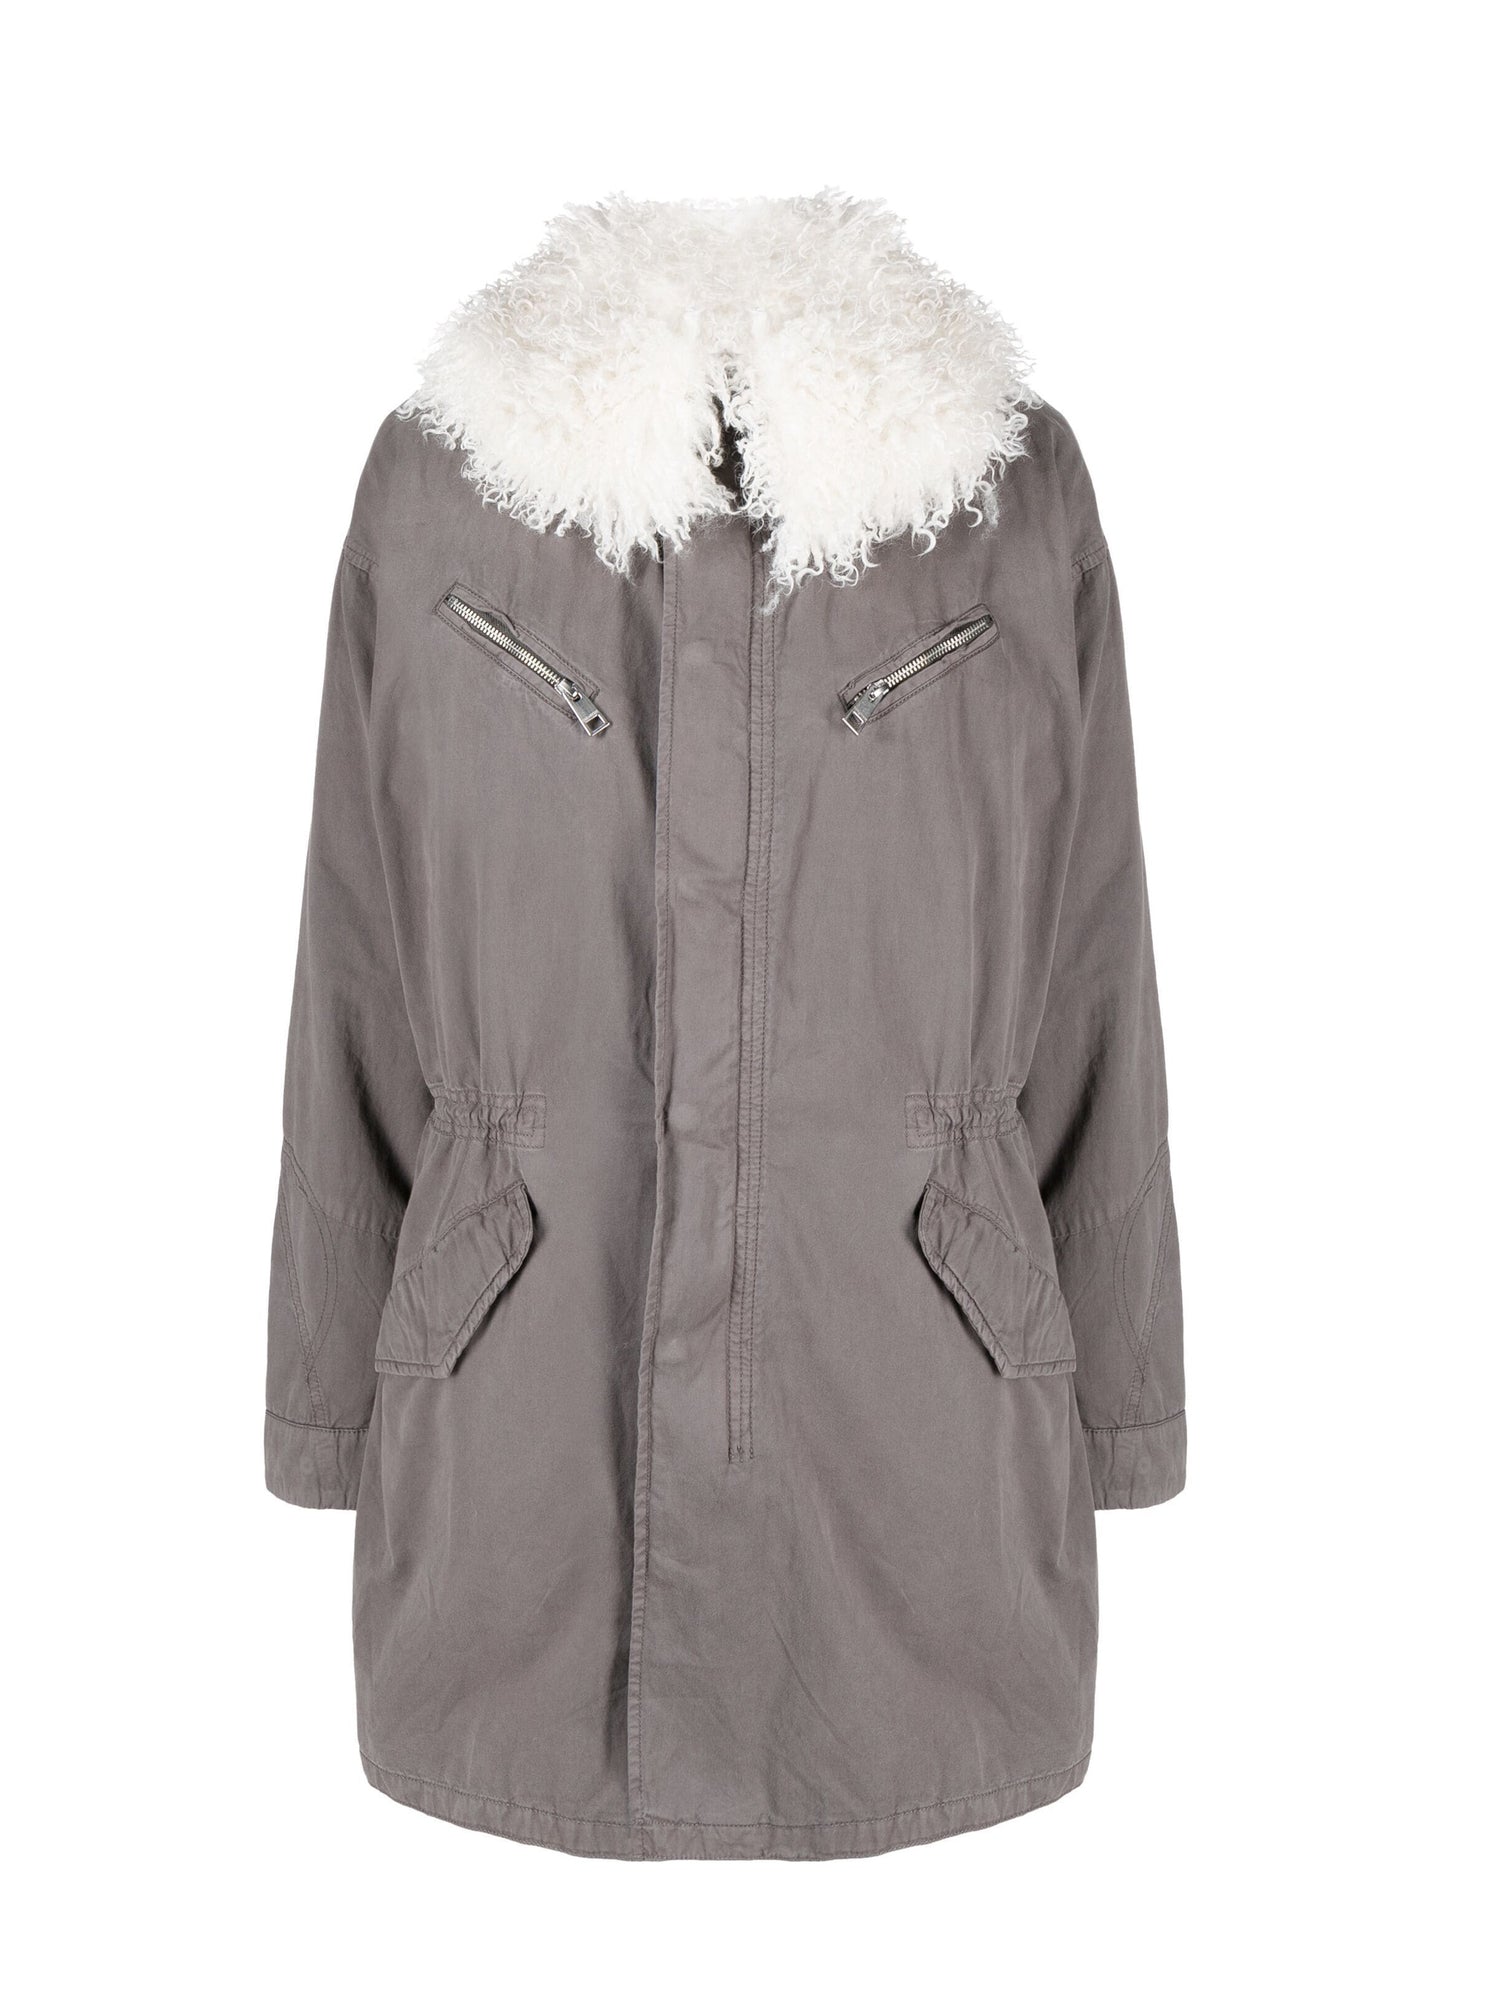 Kidea cotton lave parka coat, grey